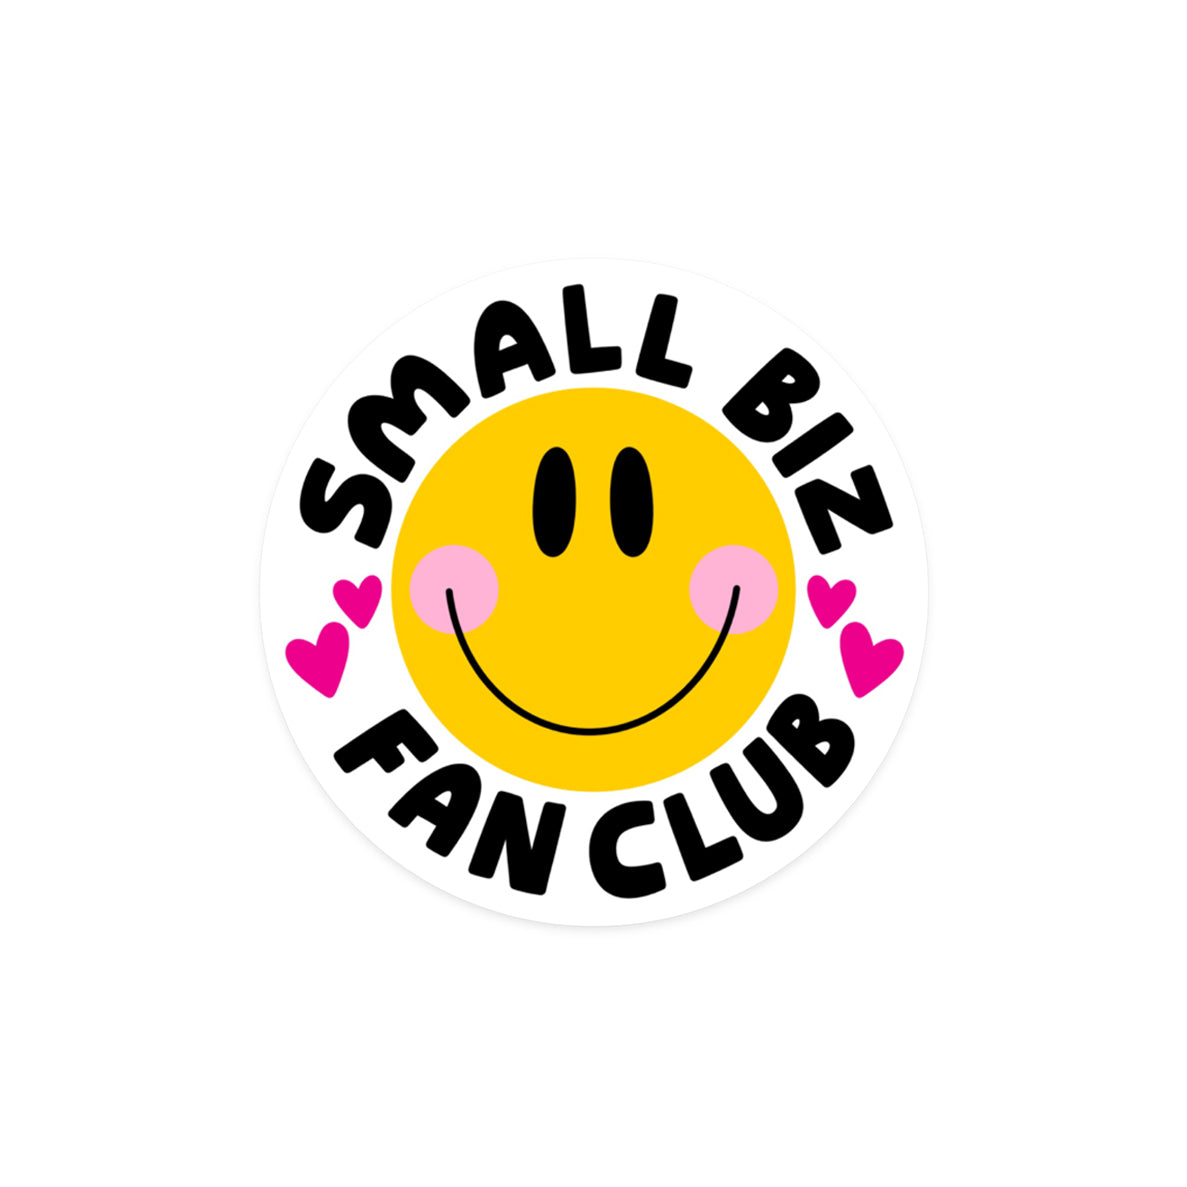 Small Biz Fan Club Sticker